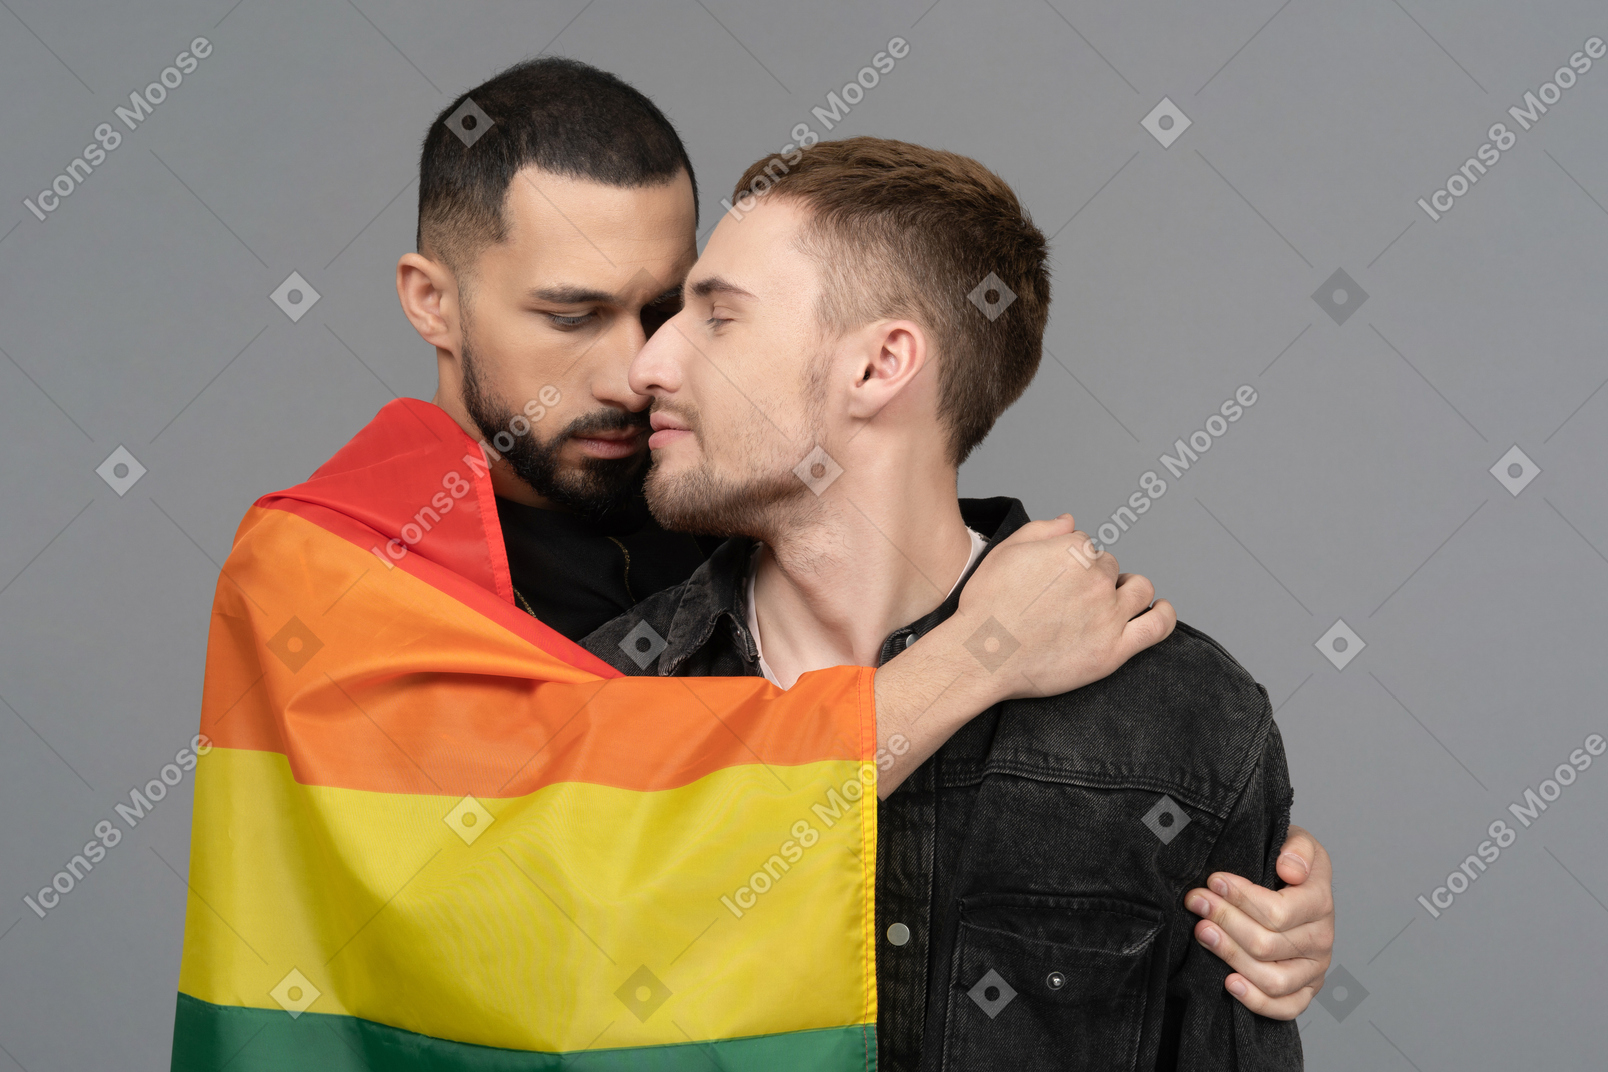 Vorderansicht von zwei jungen männern, die sich sinnlich halb umarmen und eine lgbt-flagge tragen